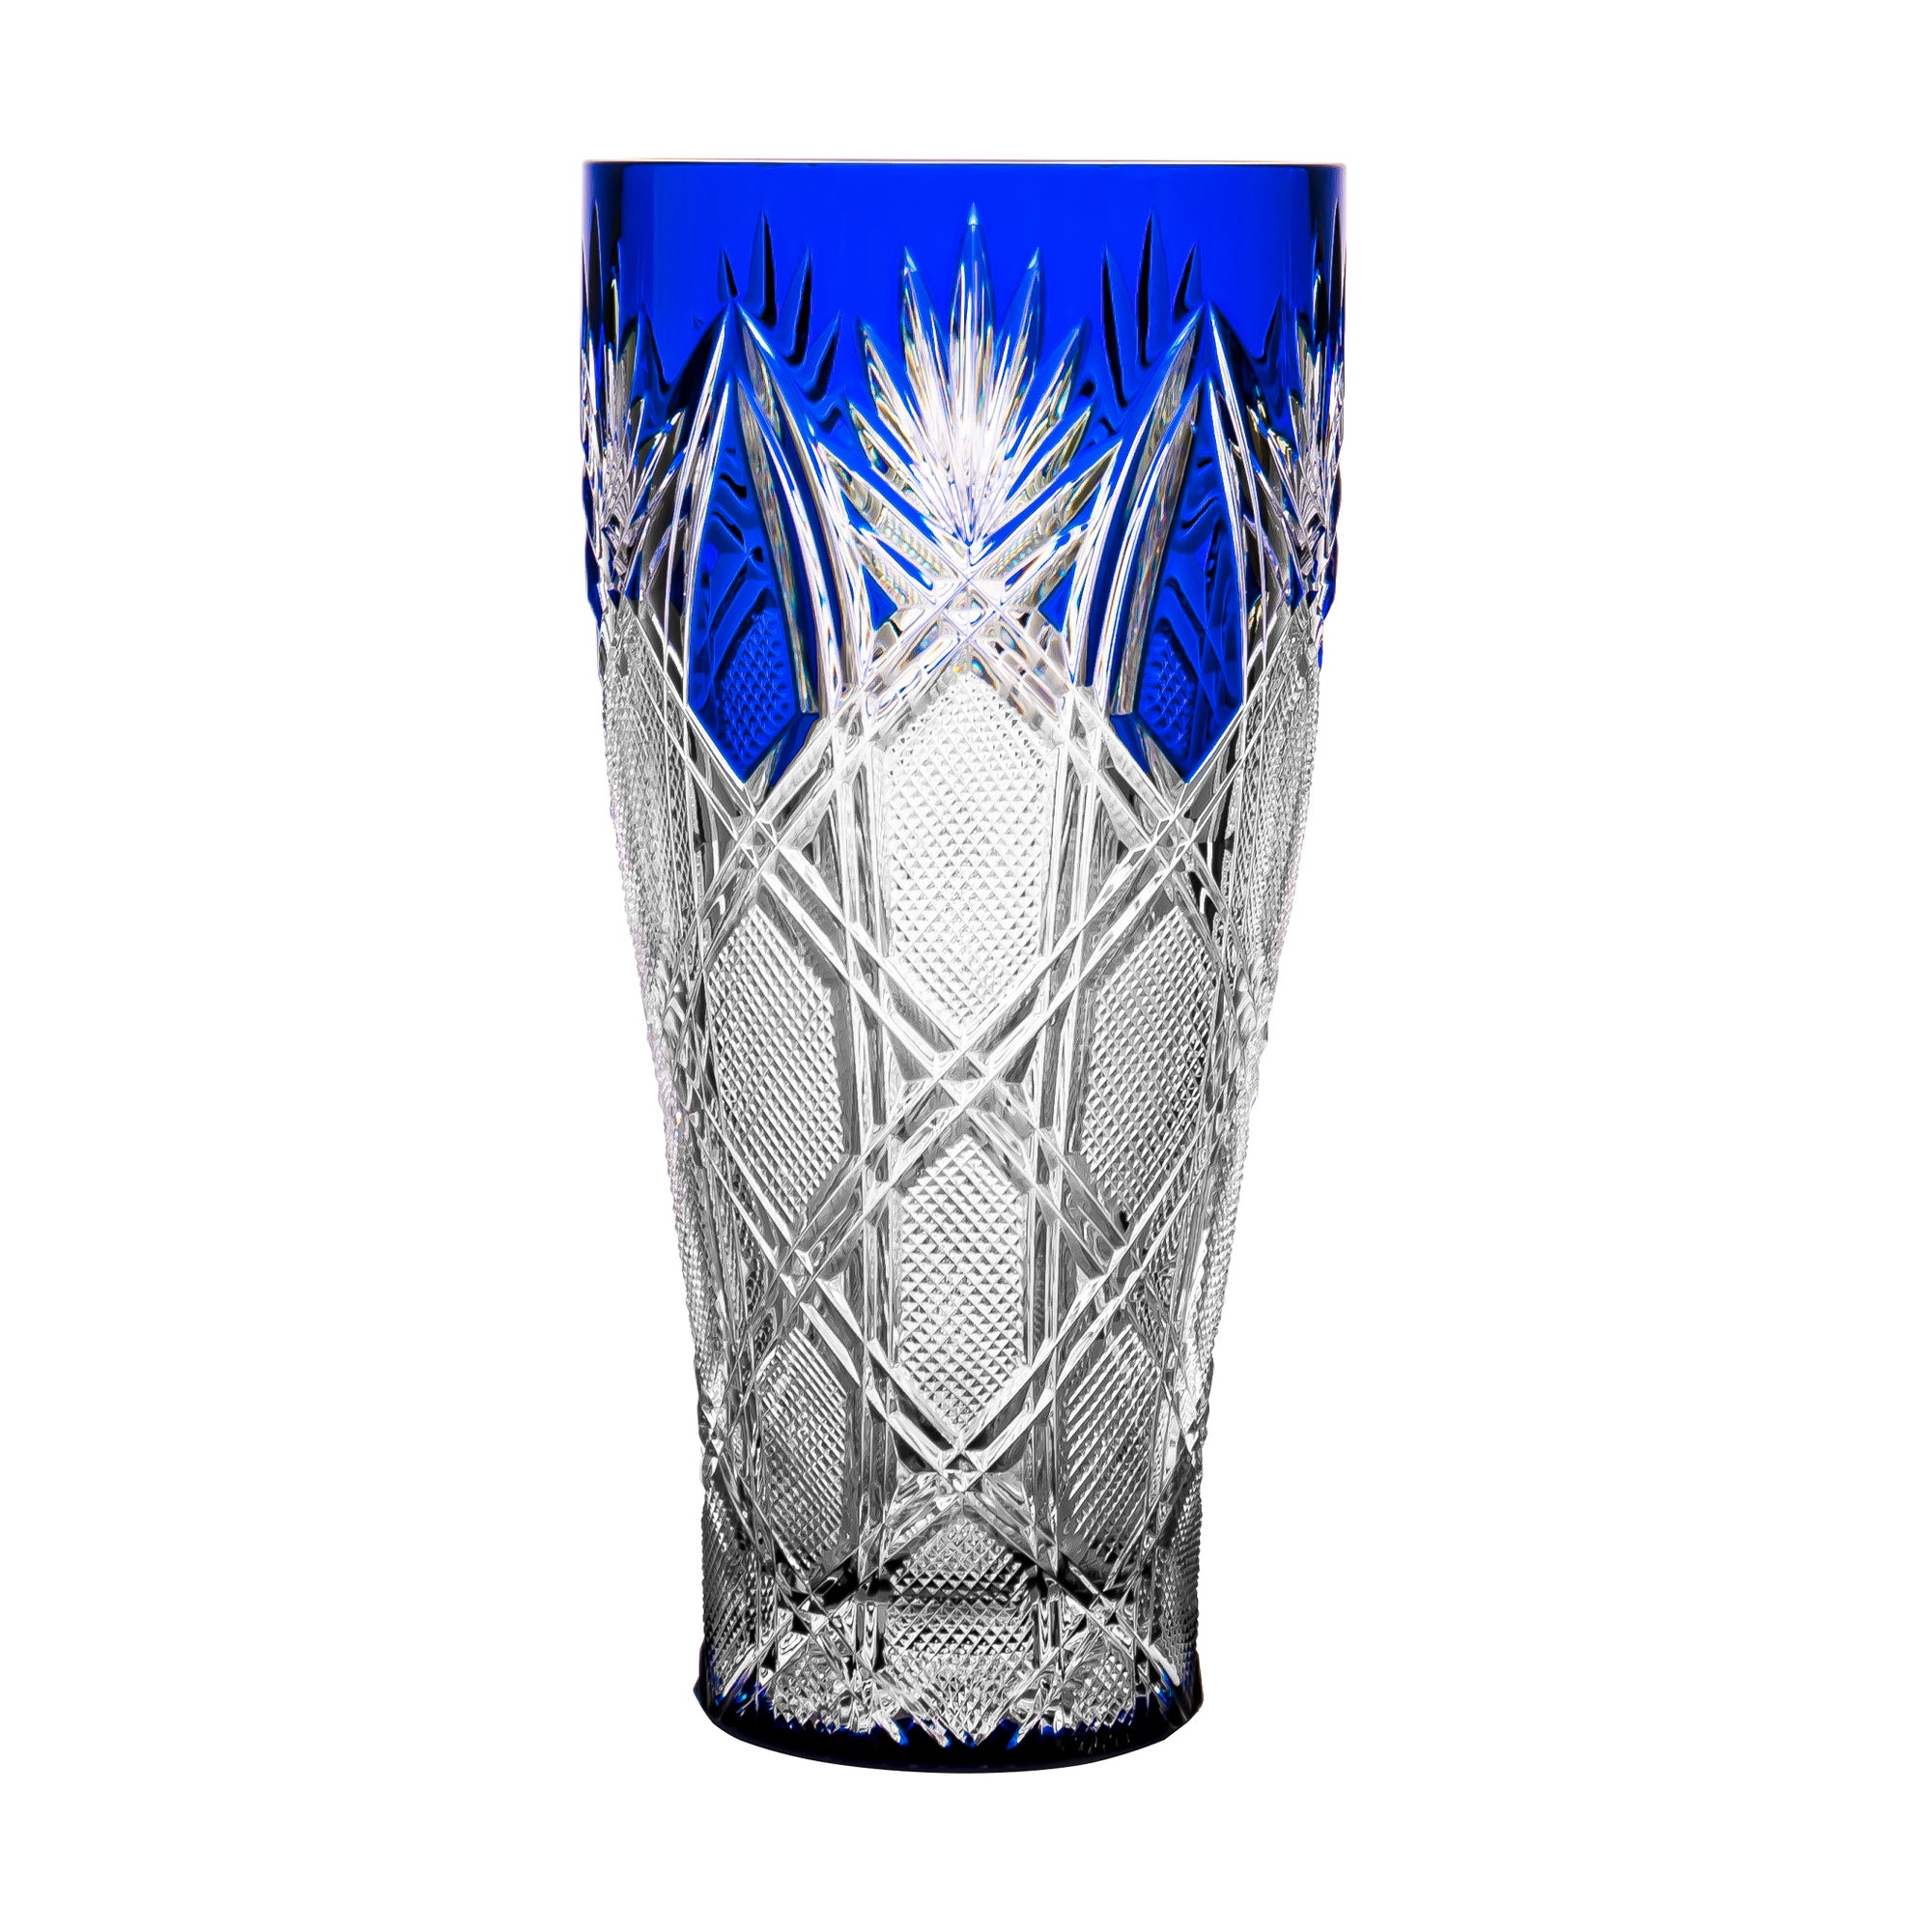 Fabergé Czar Imperal Blue Vase 9.8 in